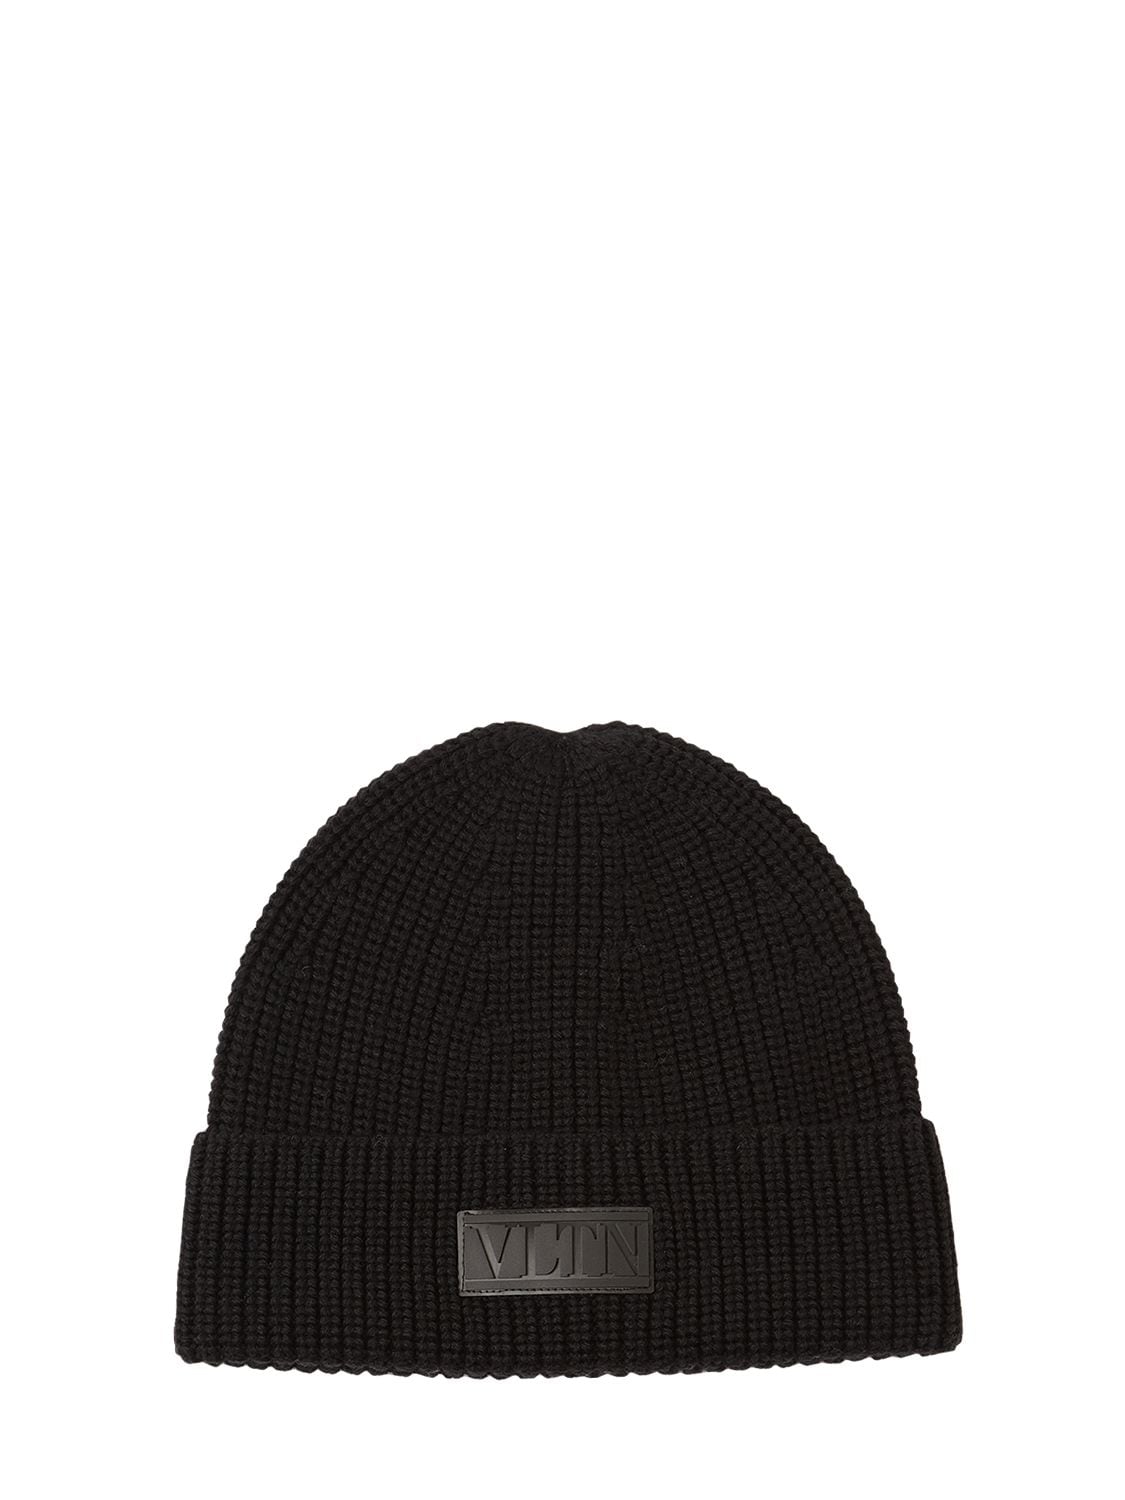 VALENTINO GARAVANI “VLTN”羊毛便帽,74IH10006-TJAX0